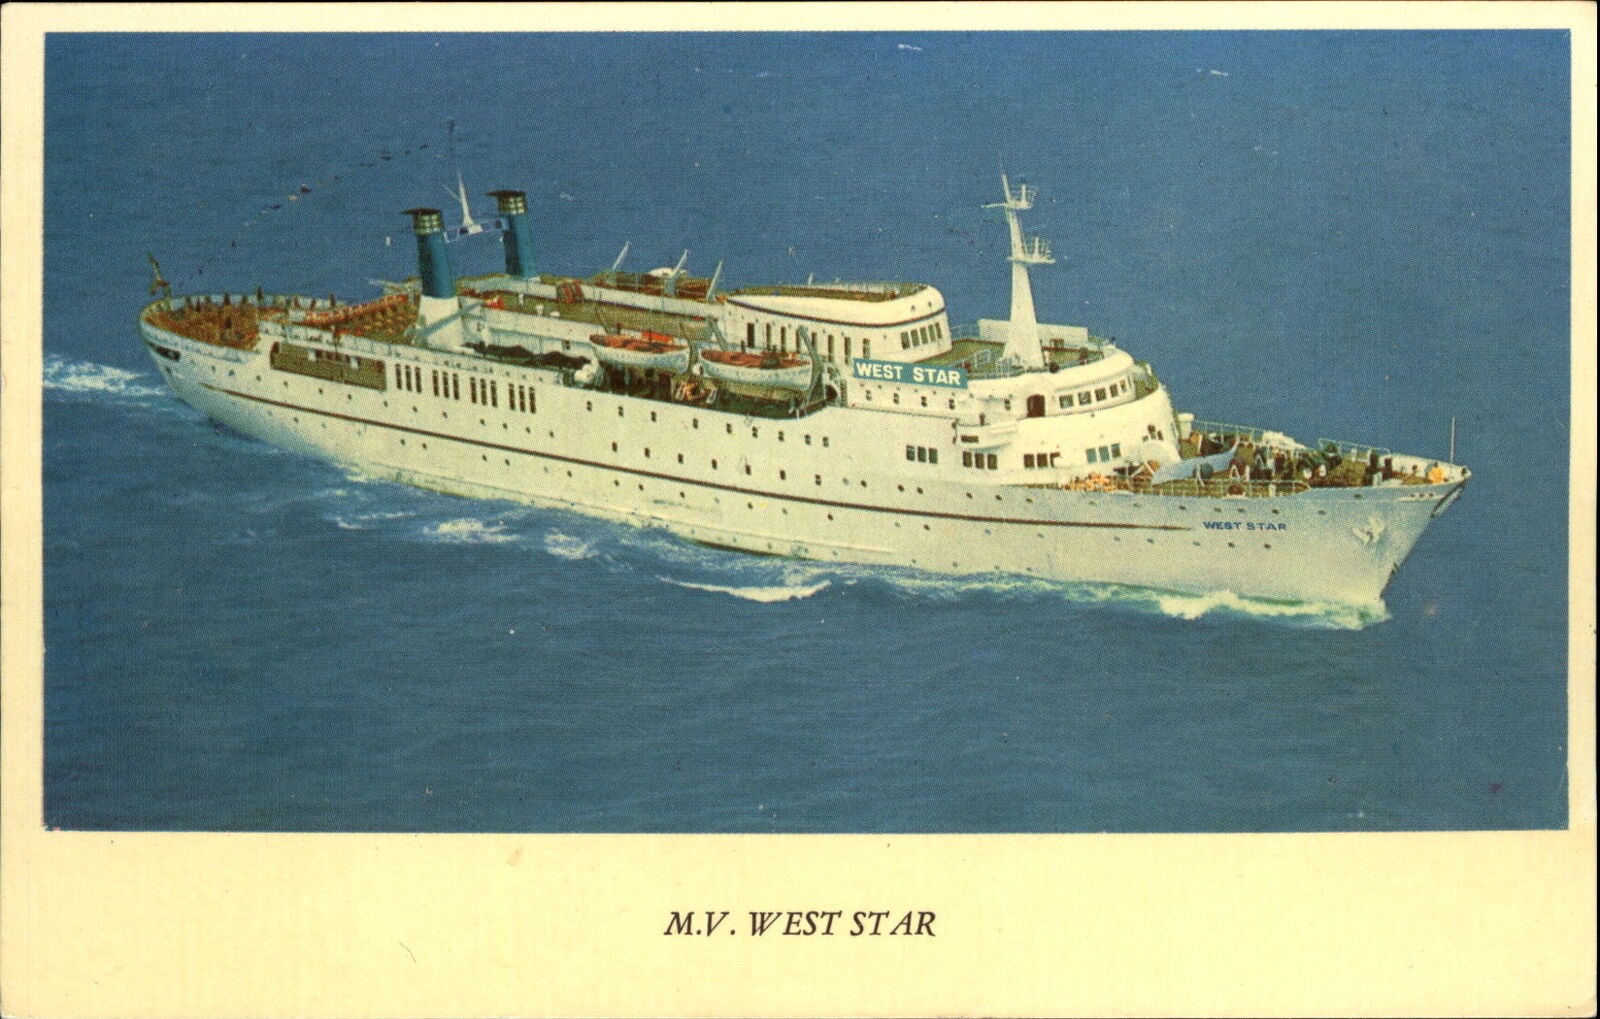 MV West Star ~West Line division of Westours ~ west coast steamship 1970s